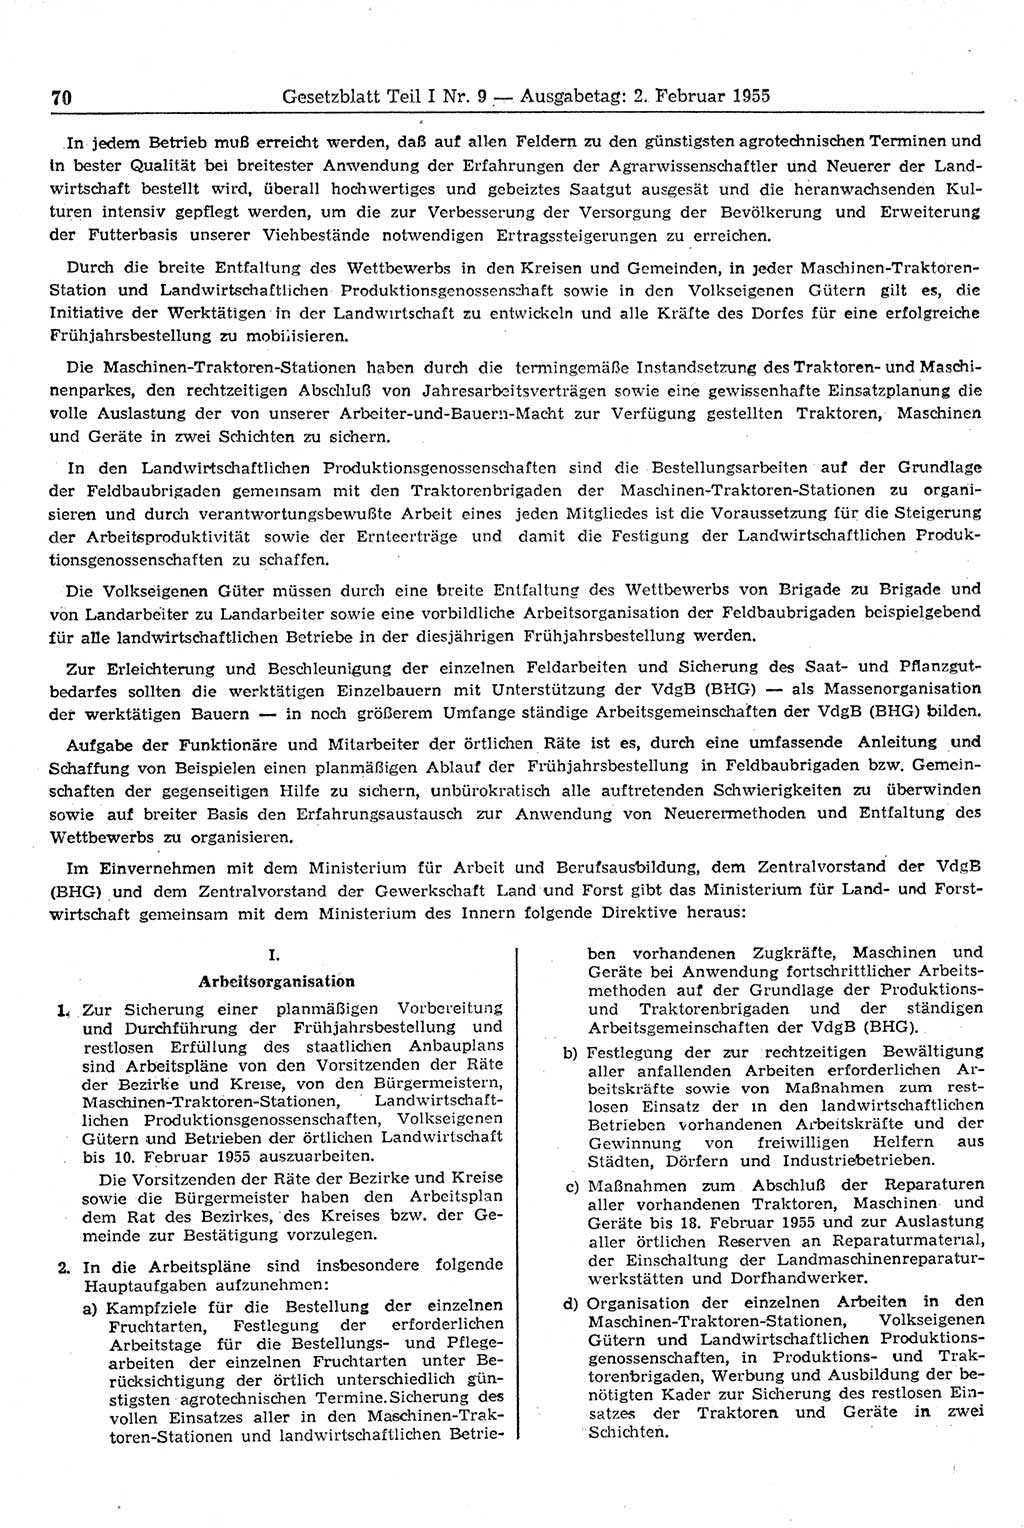 Gesetzblatt (GBl.) der Deutschen Demokratischen Republik (DDR) Teil Ⅰ 1955, Seite 70 (GBl. DDR Ⅰ 1955, S. 70)